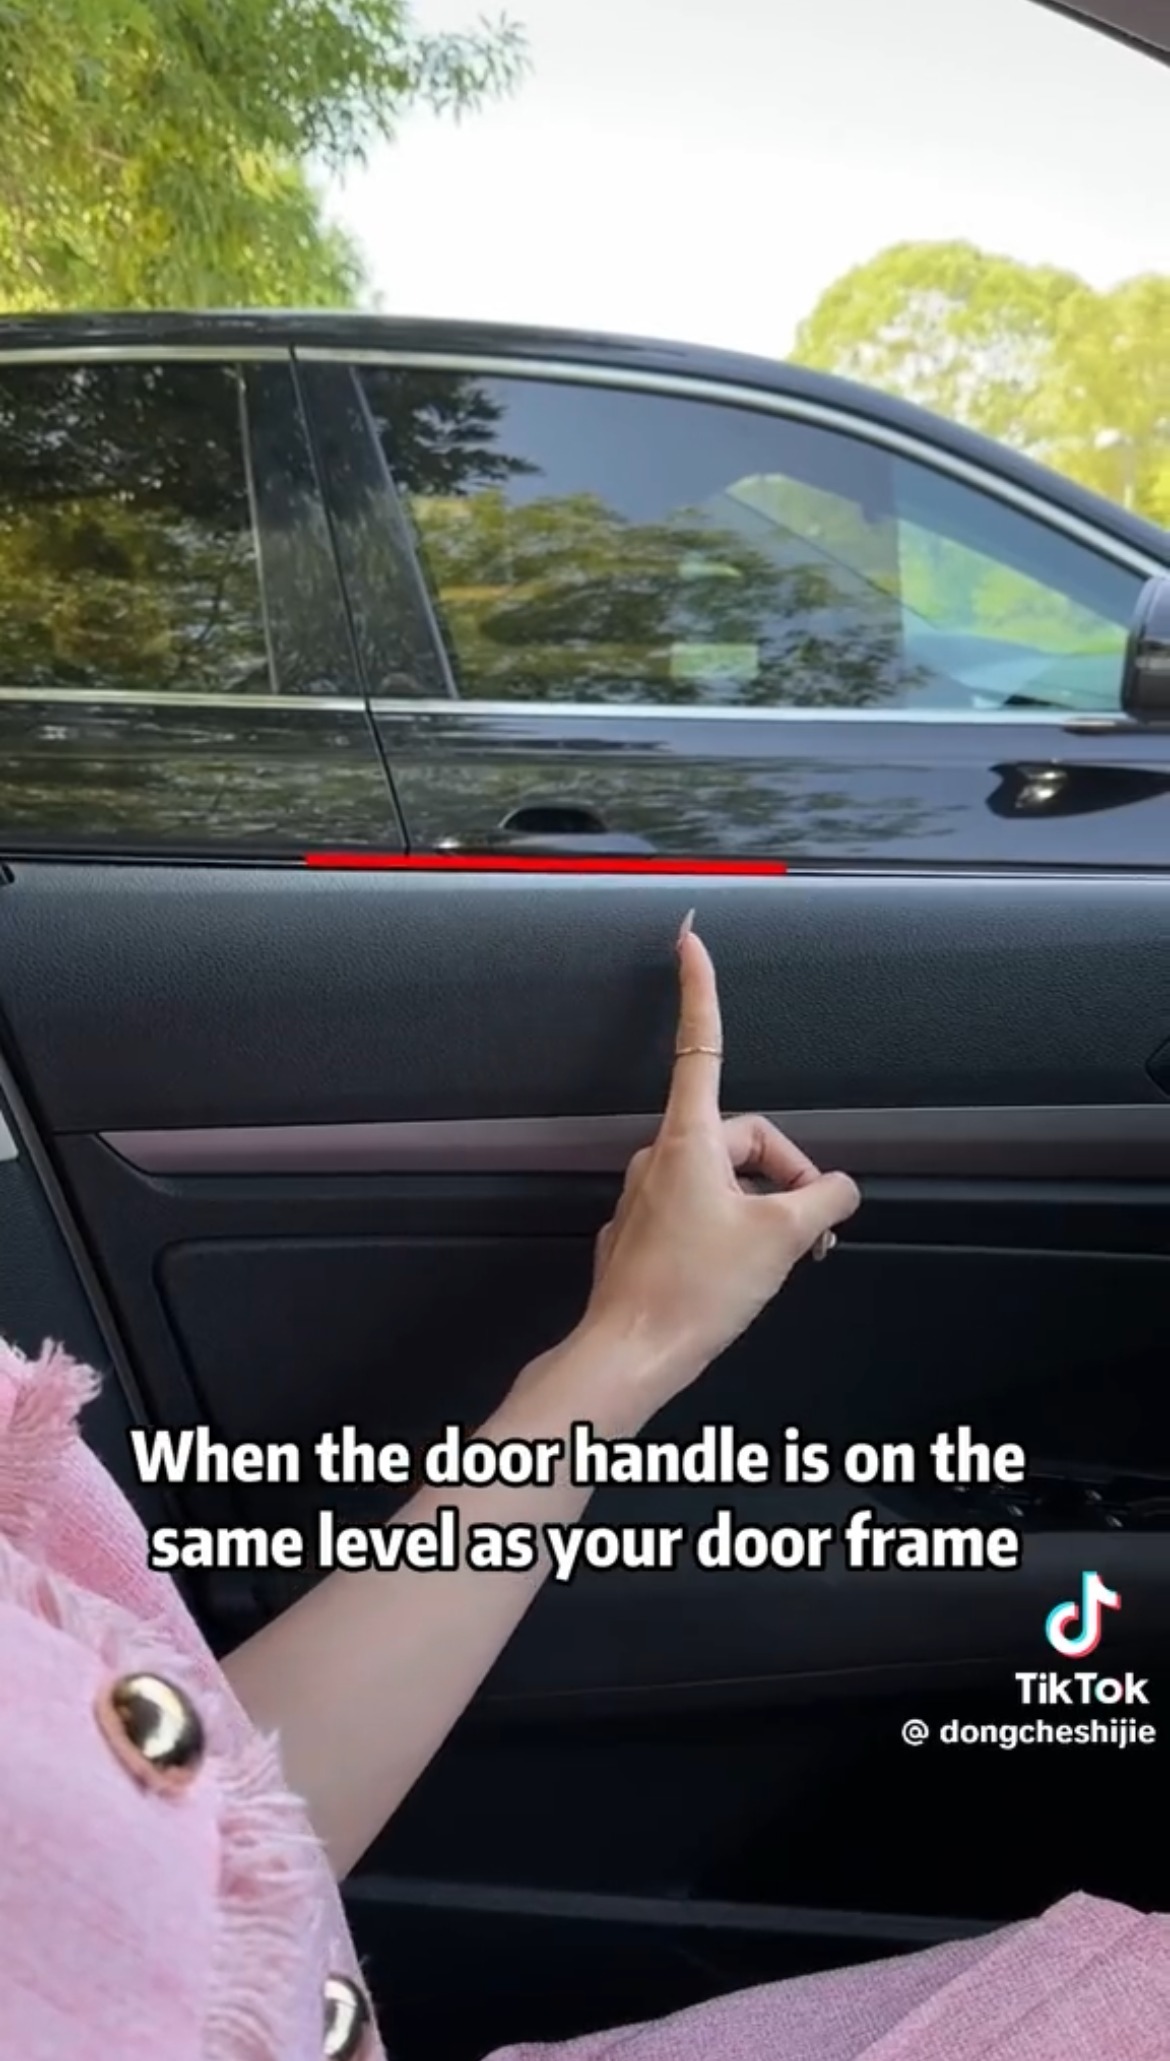 Die erste besteht darin, sicherzustellen, dass Sie beim Öffnen Ihrer Tür nicht mit anderen Autos zusammenstoßen